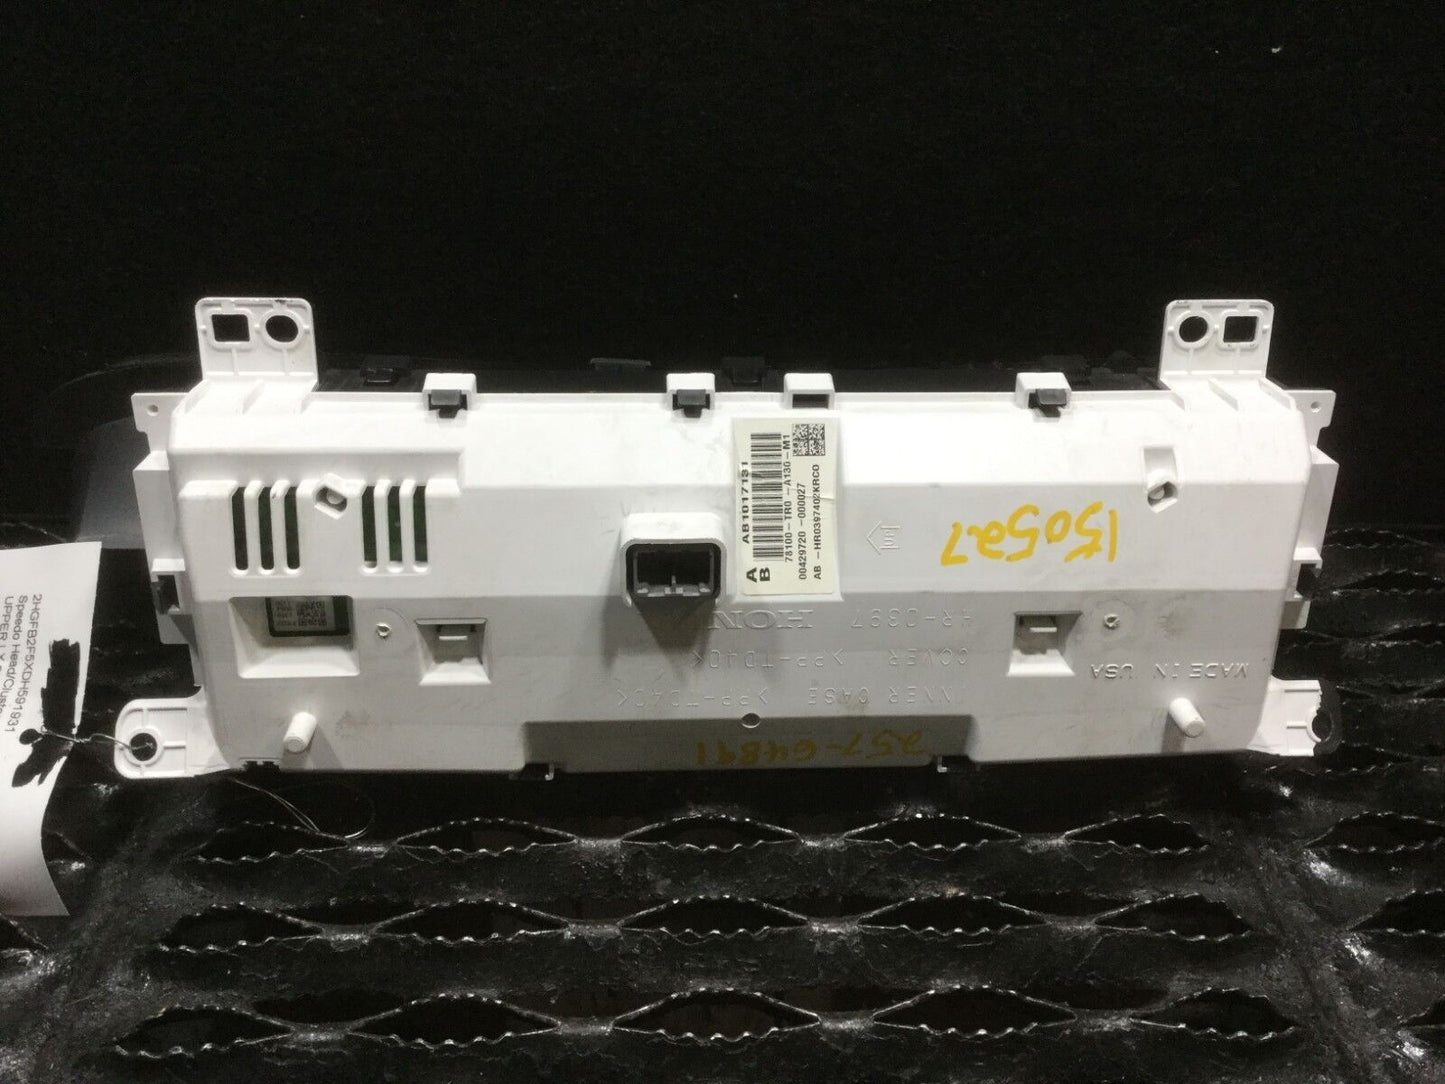 12 13 14 15 Honda Civic Speedometr Instrument Cluster Panel Gauge OEM N48 15k